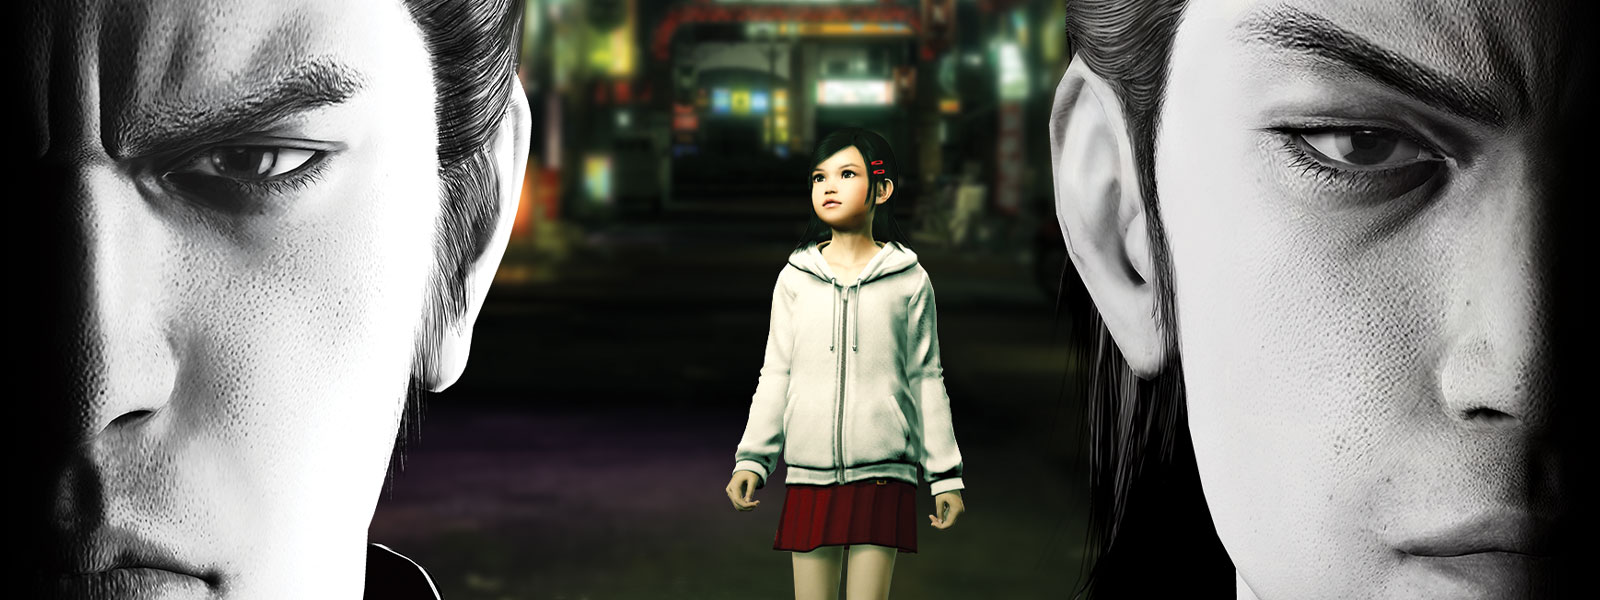 Dos personajes de Yakuza miran sombríamente hacia adelante, con una niña pequeña, de pie, en la ciudad detrás de ellos.